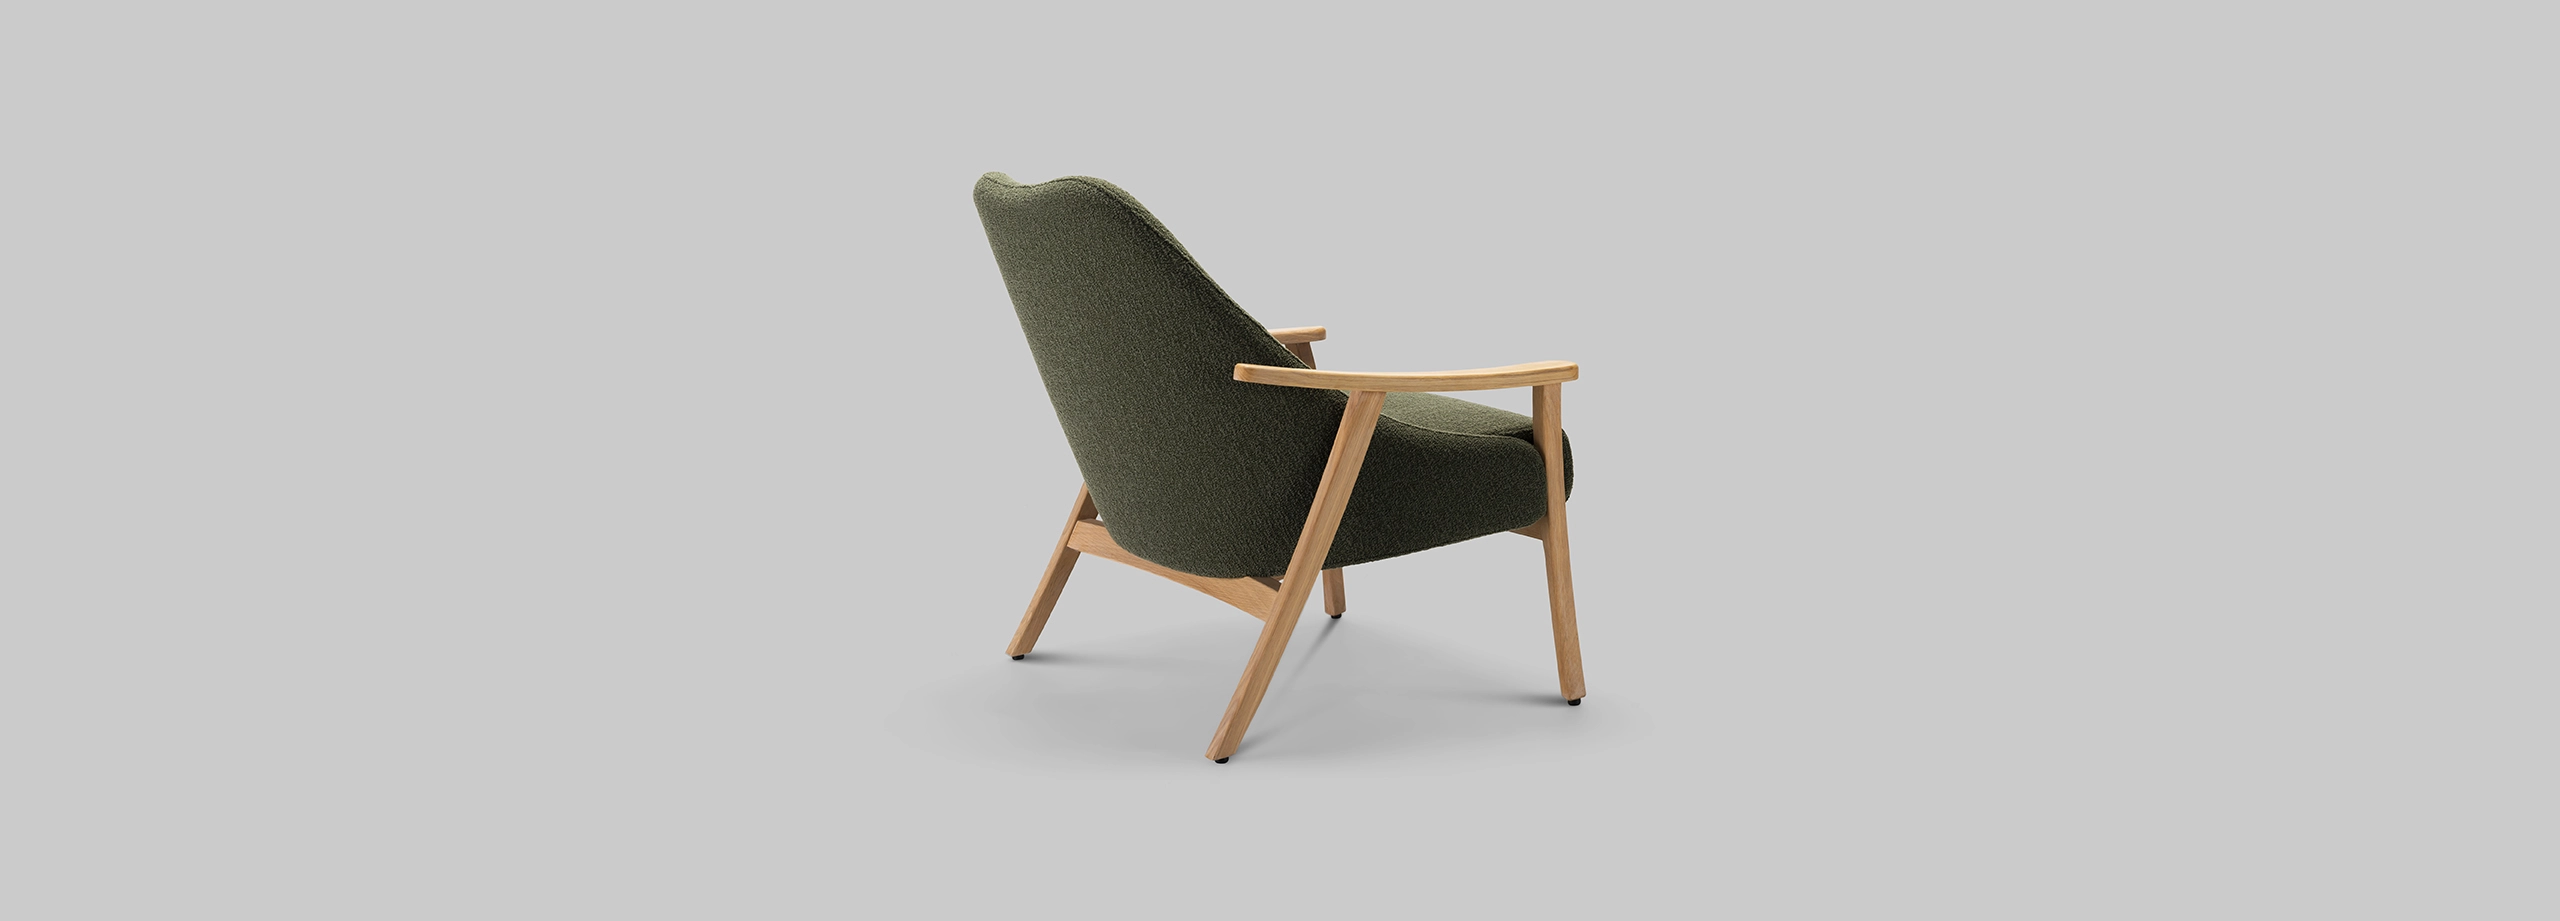 Harvink design Blazoen fauteuil monza groen